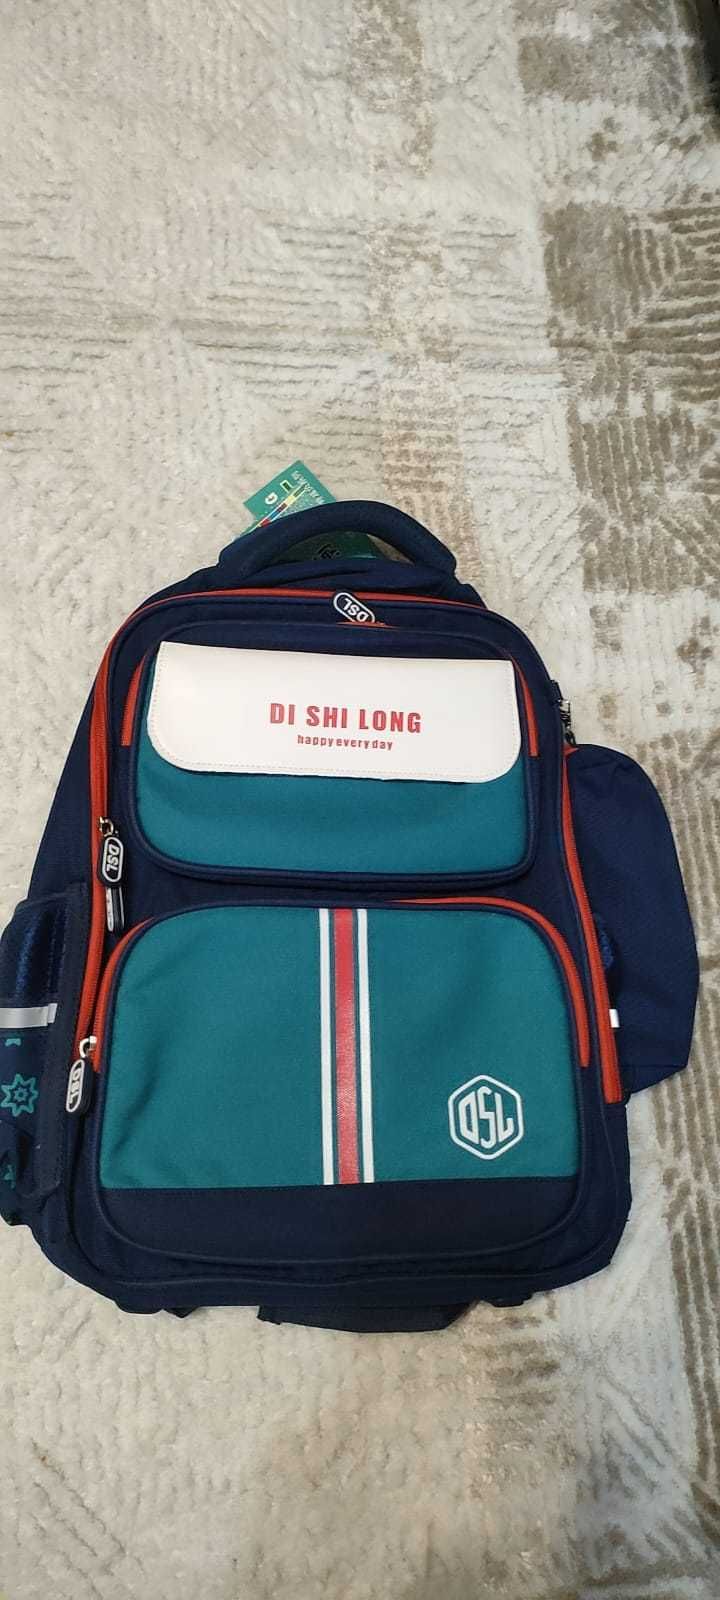 Школьный рюкзак качественный